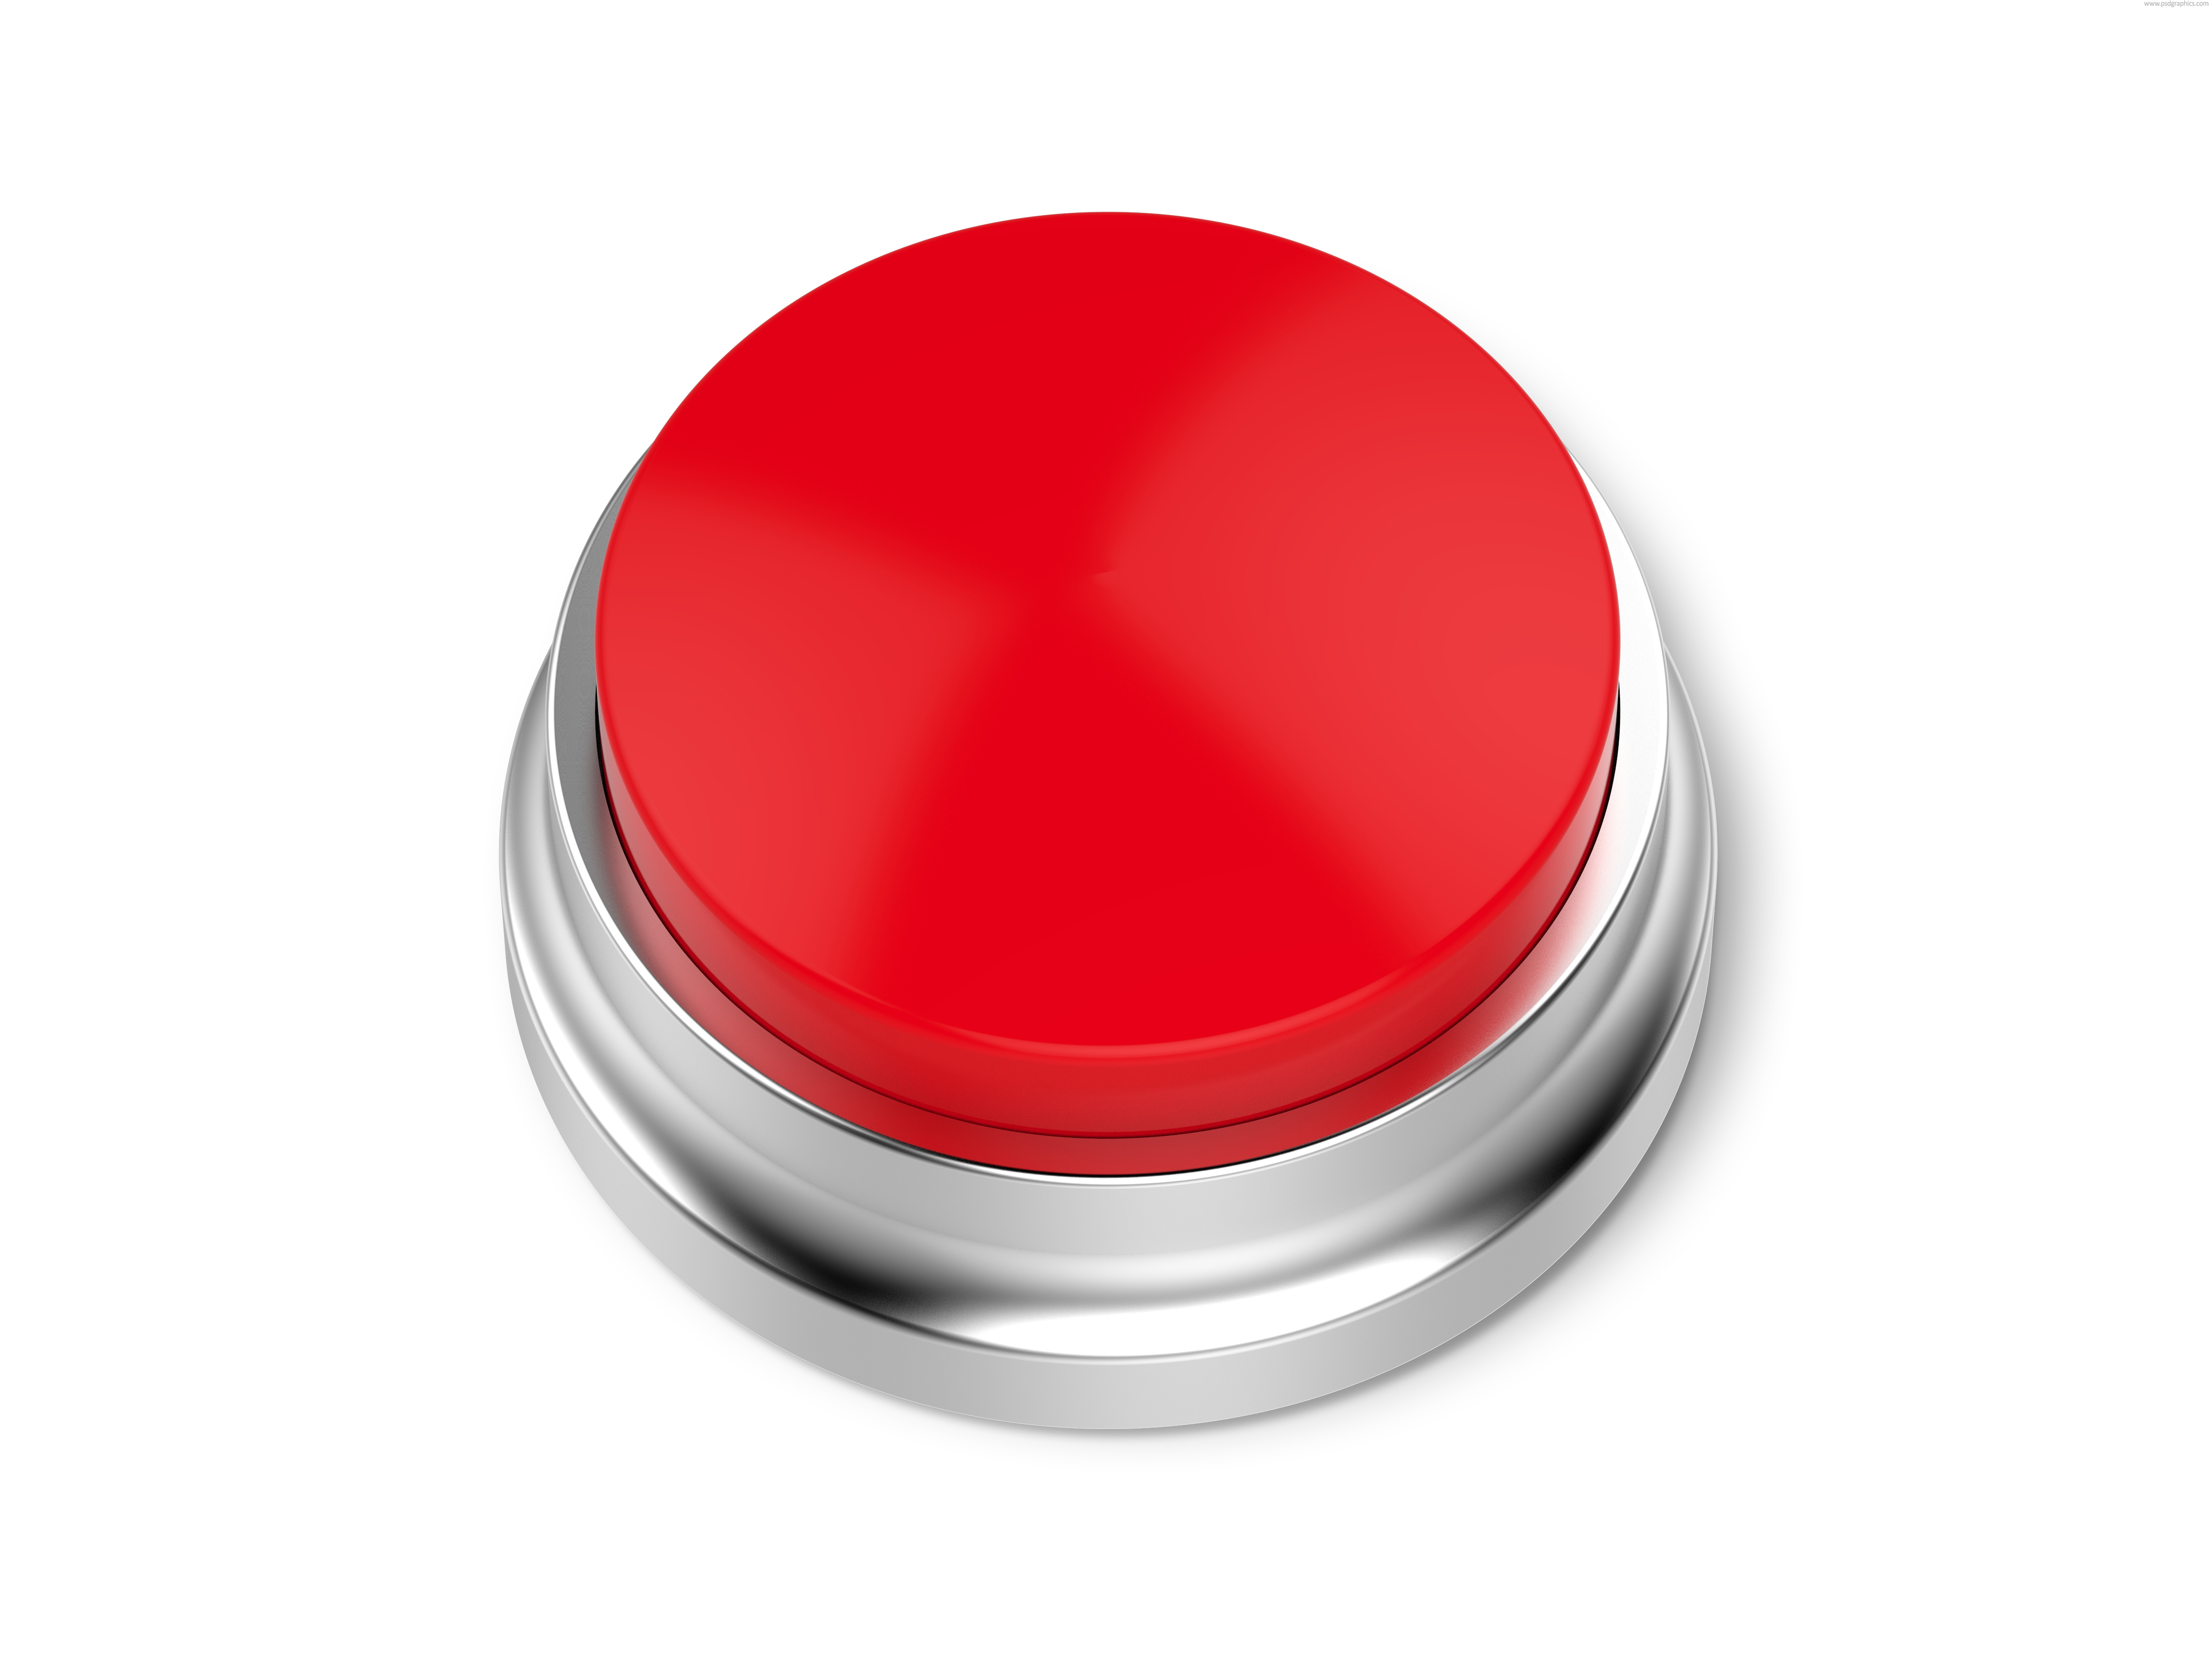 Нажми на смайлик. Красная кнопка. Изображение кнопки. Кнопка без фона. Круглая кнопка.